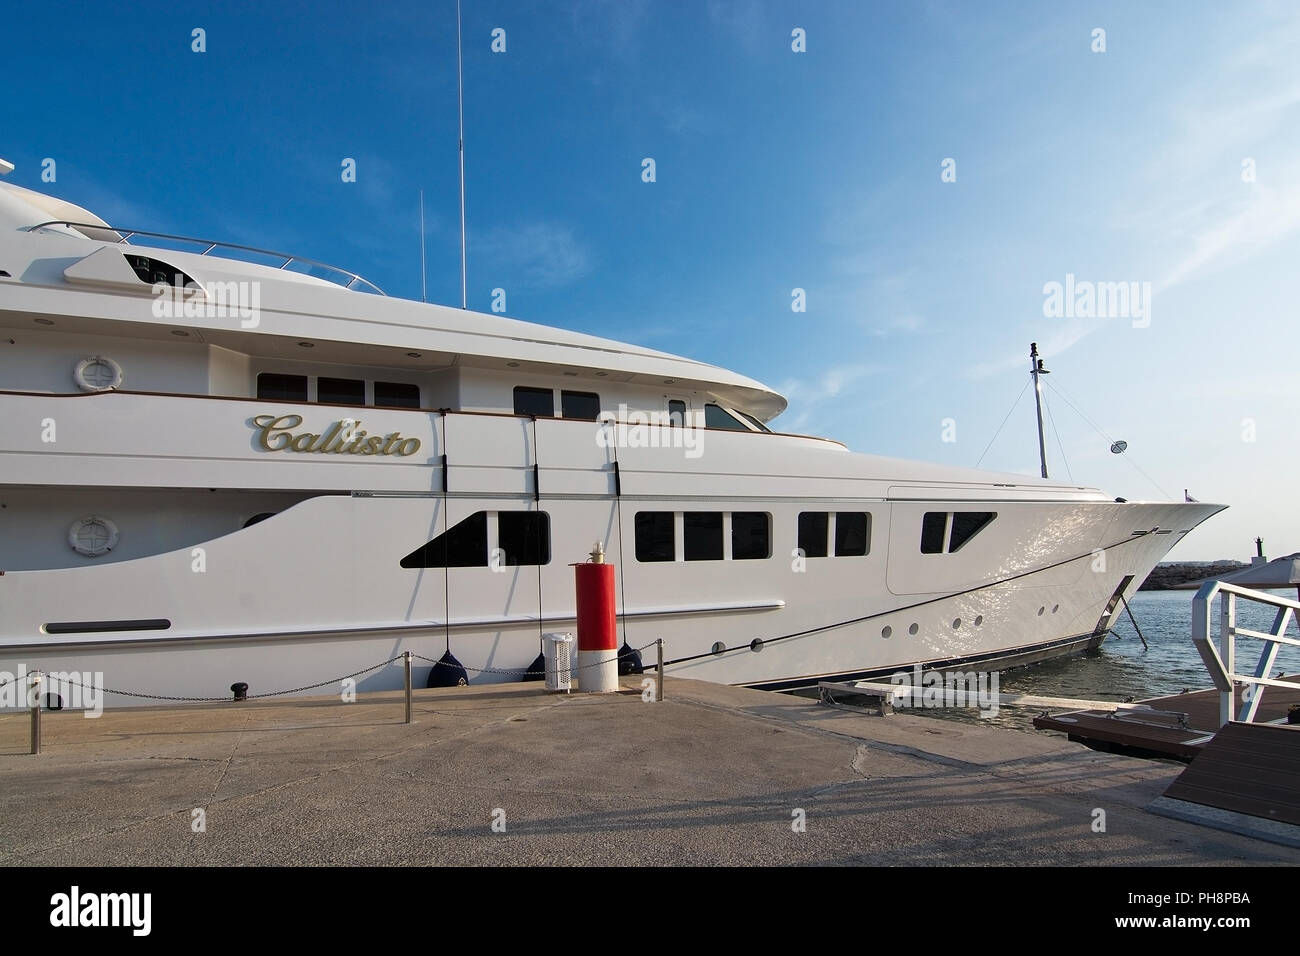 MALLORCA, SPANIEN - 30. AUGUST 2018: Callisto Yacht in Puerto Portals Marina auf einem späten Sommer sonnigen Nachmittag am 30. August 2018 auf Mallorca, Spanien Stockfoto